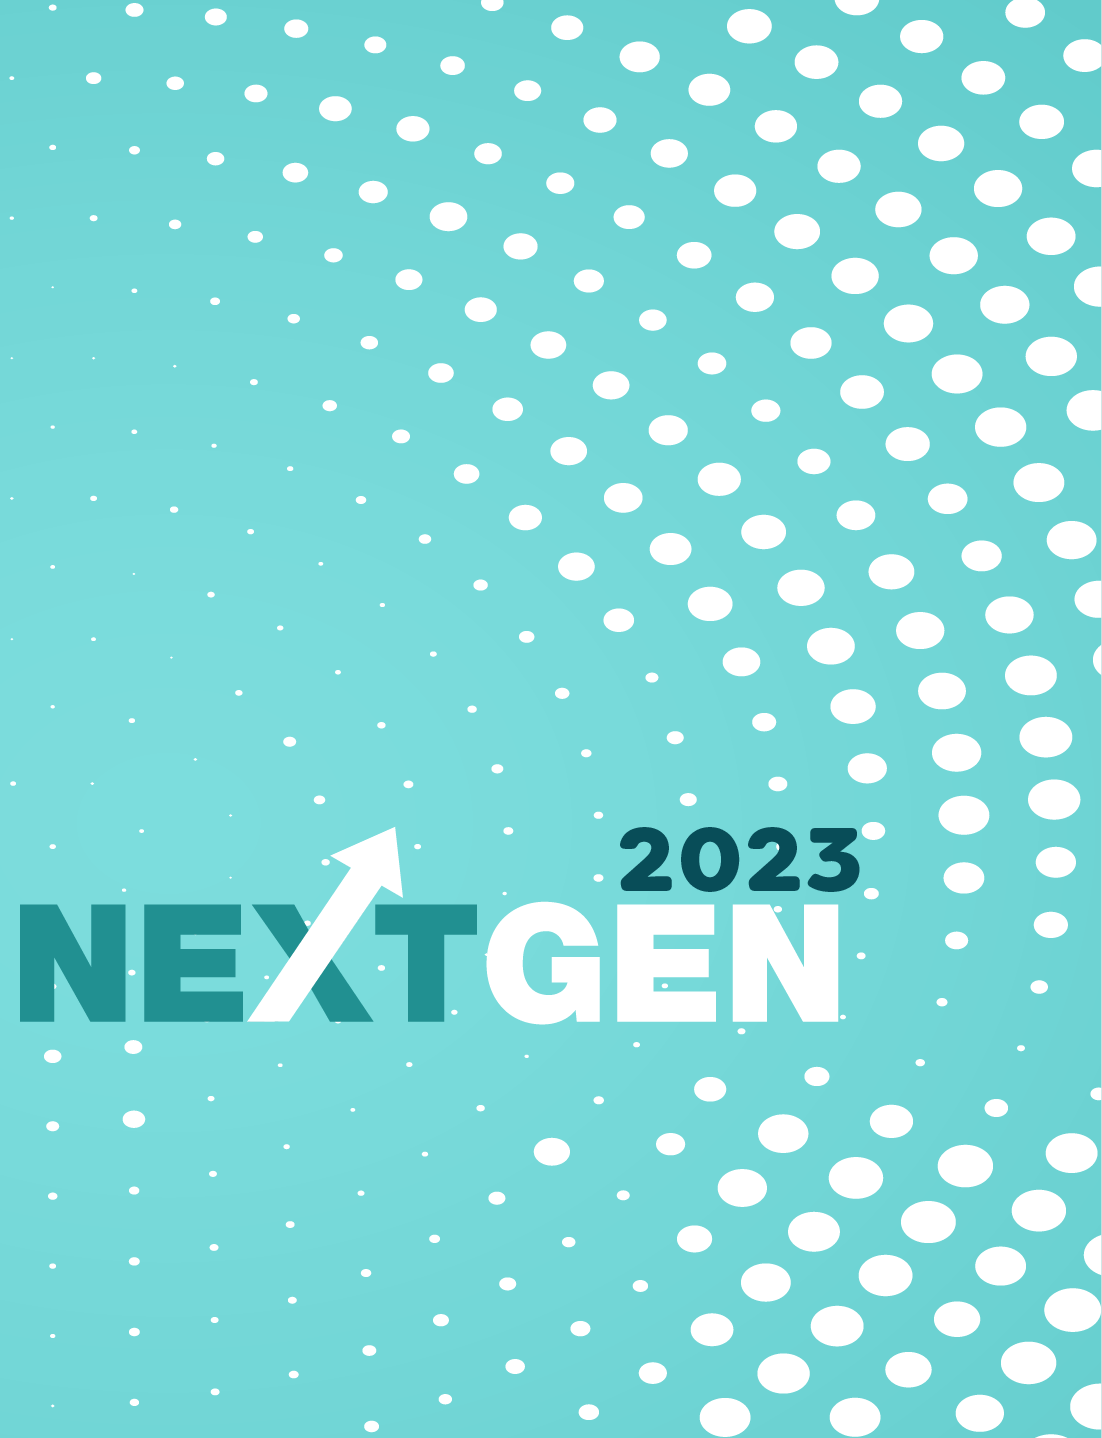 NextGen 2023